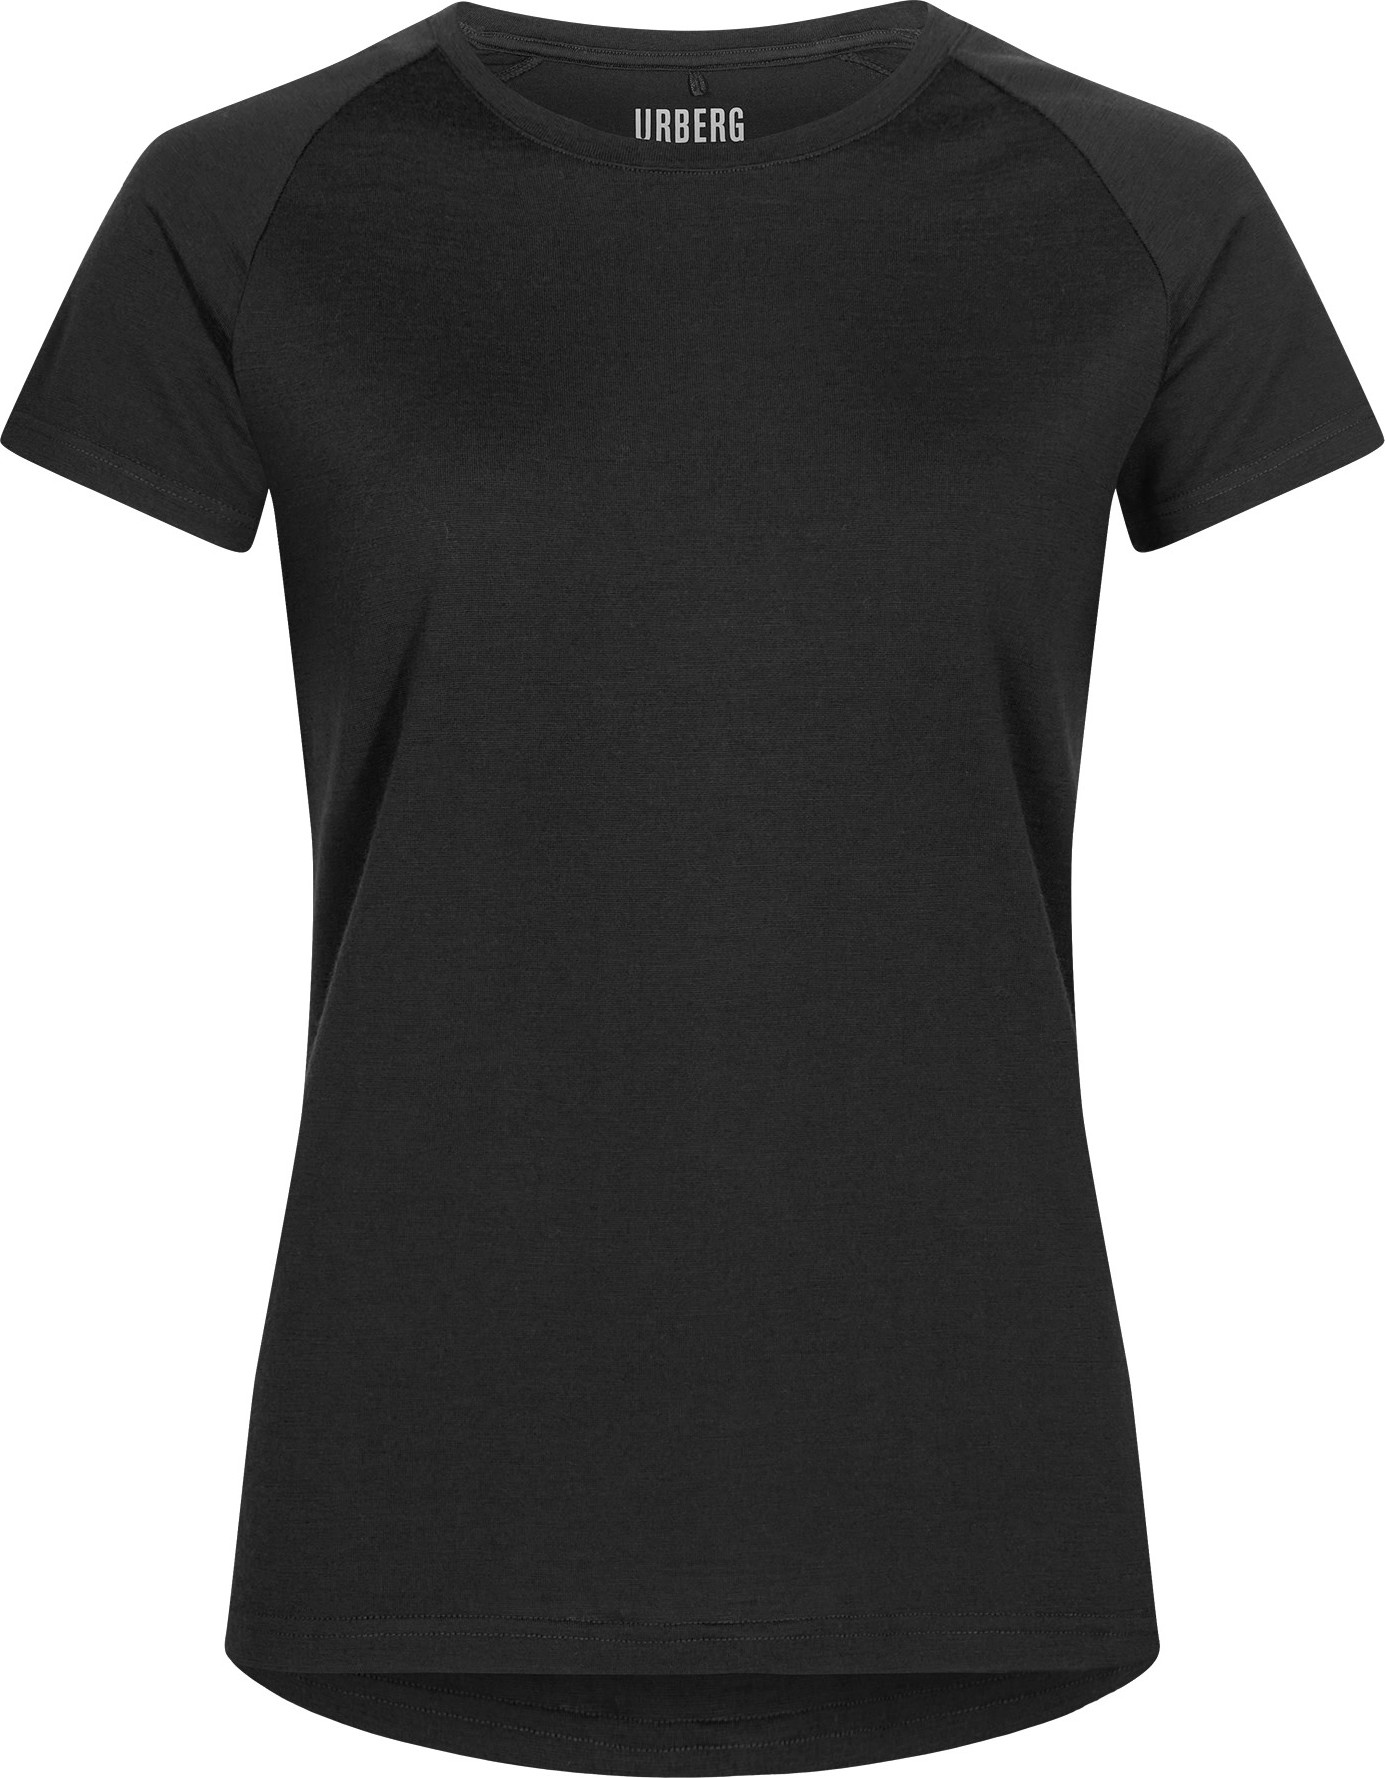 Urberg Women’s Lyngen Merino T-Shirt 2.0 Black Beauty